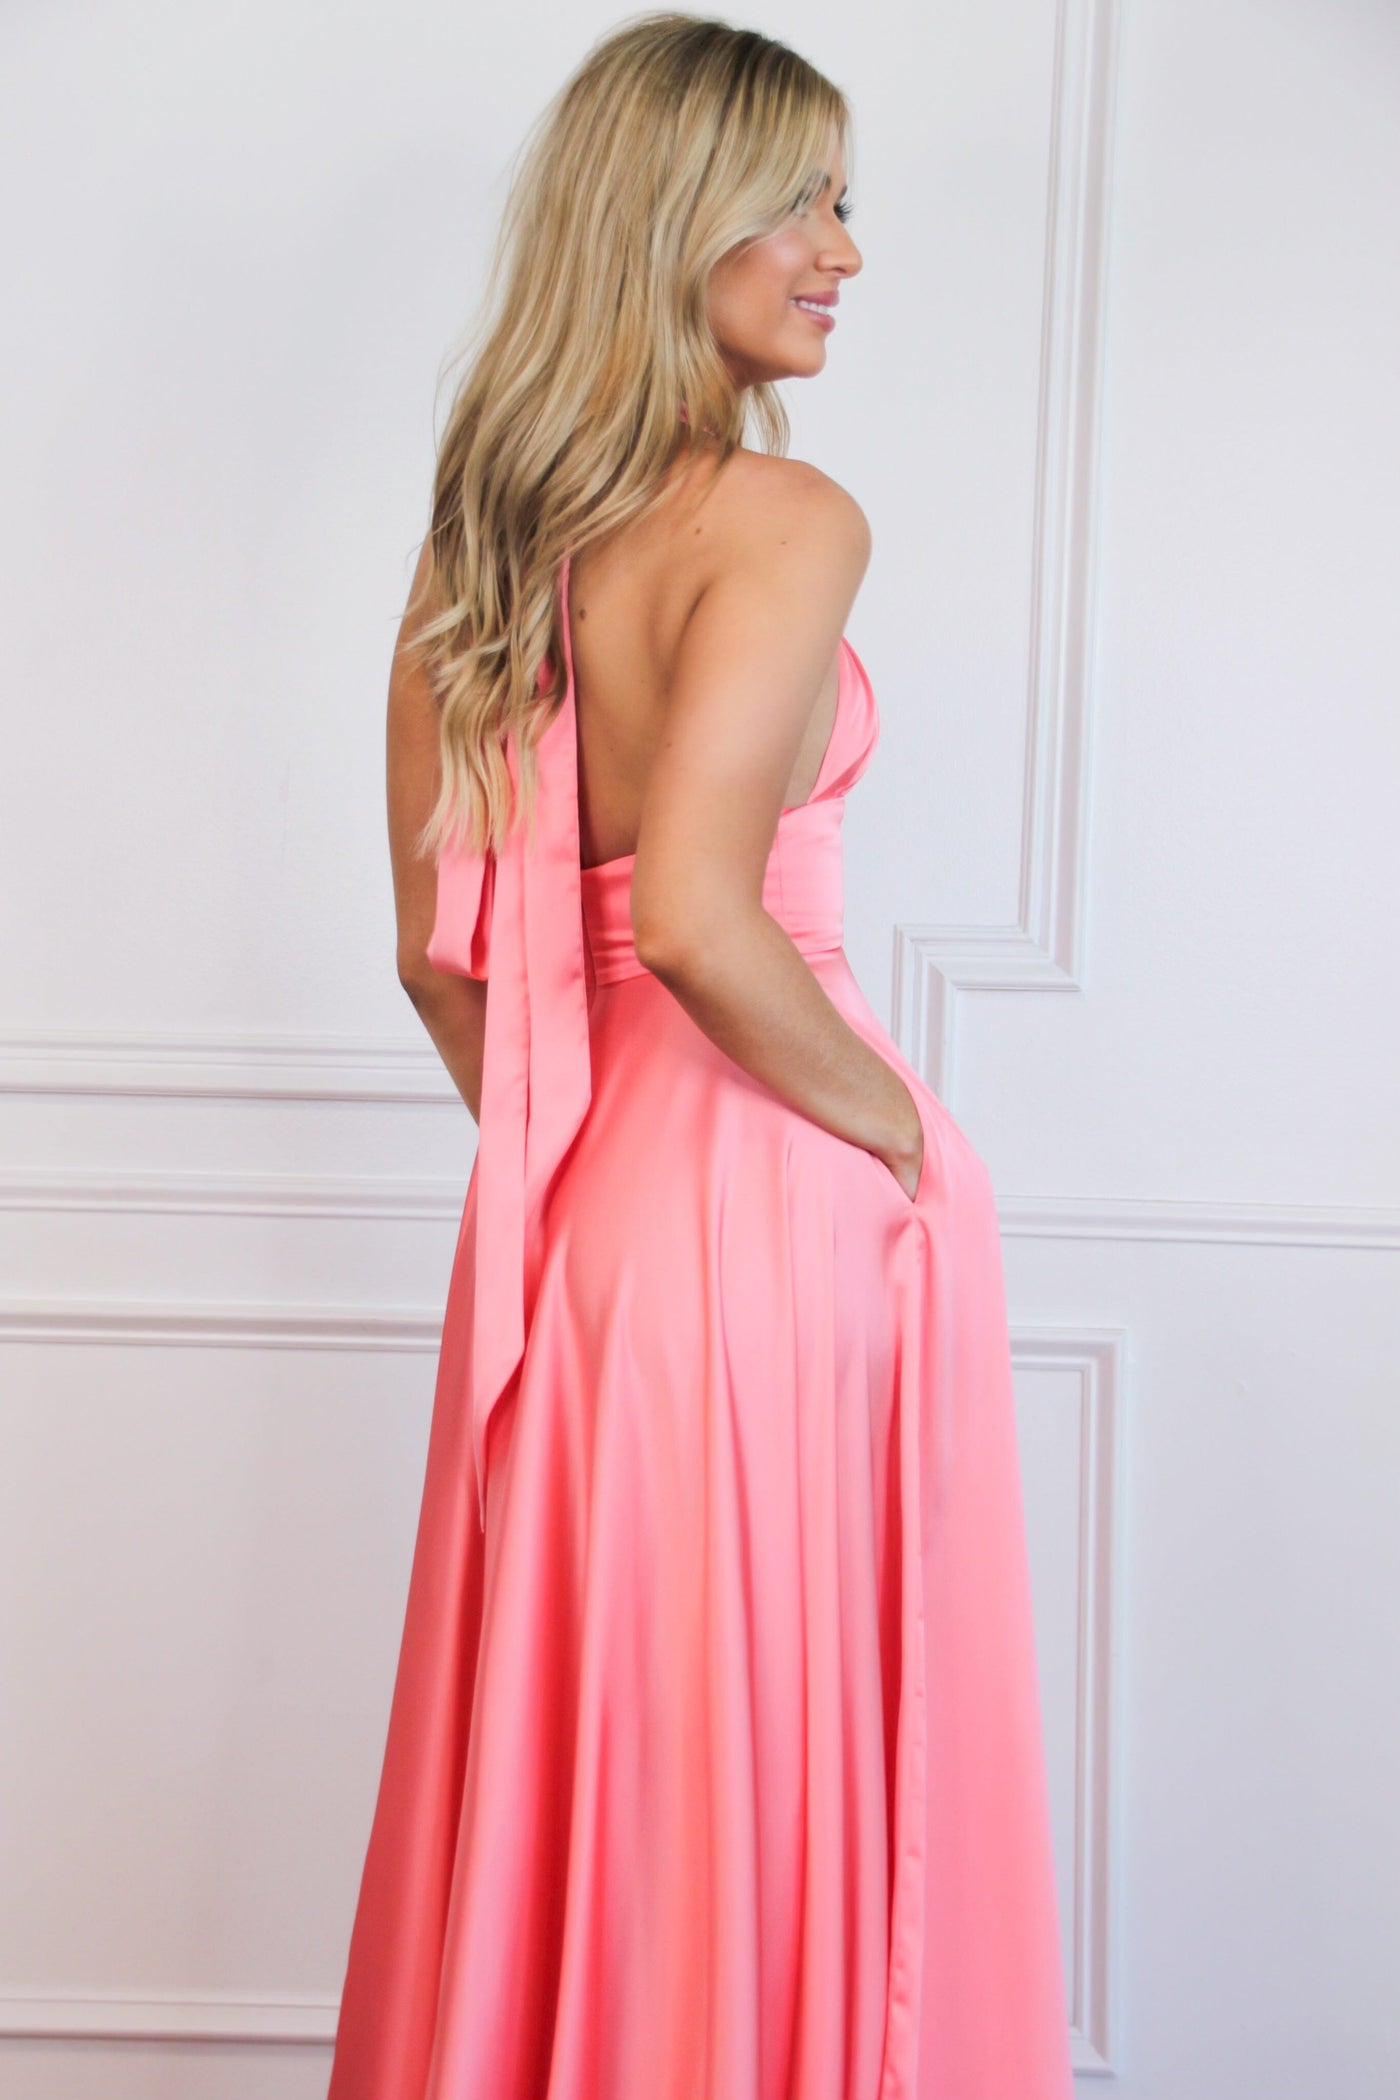 Jaycee Satin Halter Neck Slit Formal Dress: Bright Coral Pink - Bella and Bloom Boutique